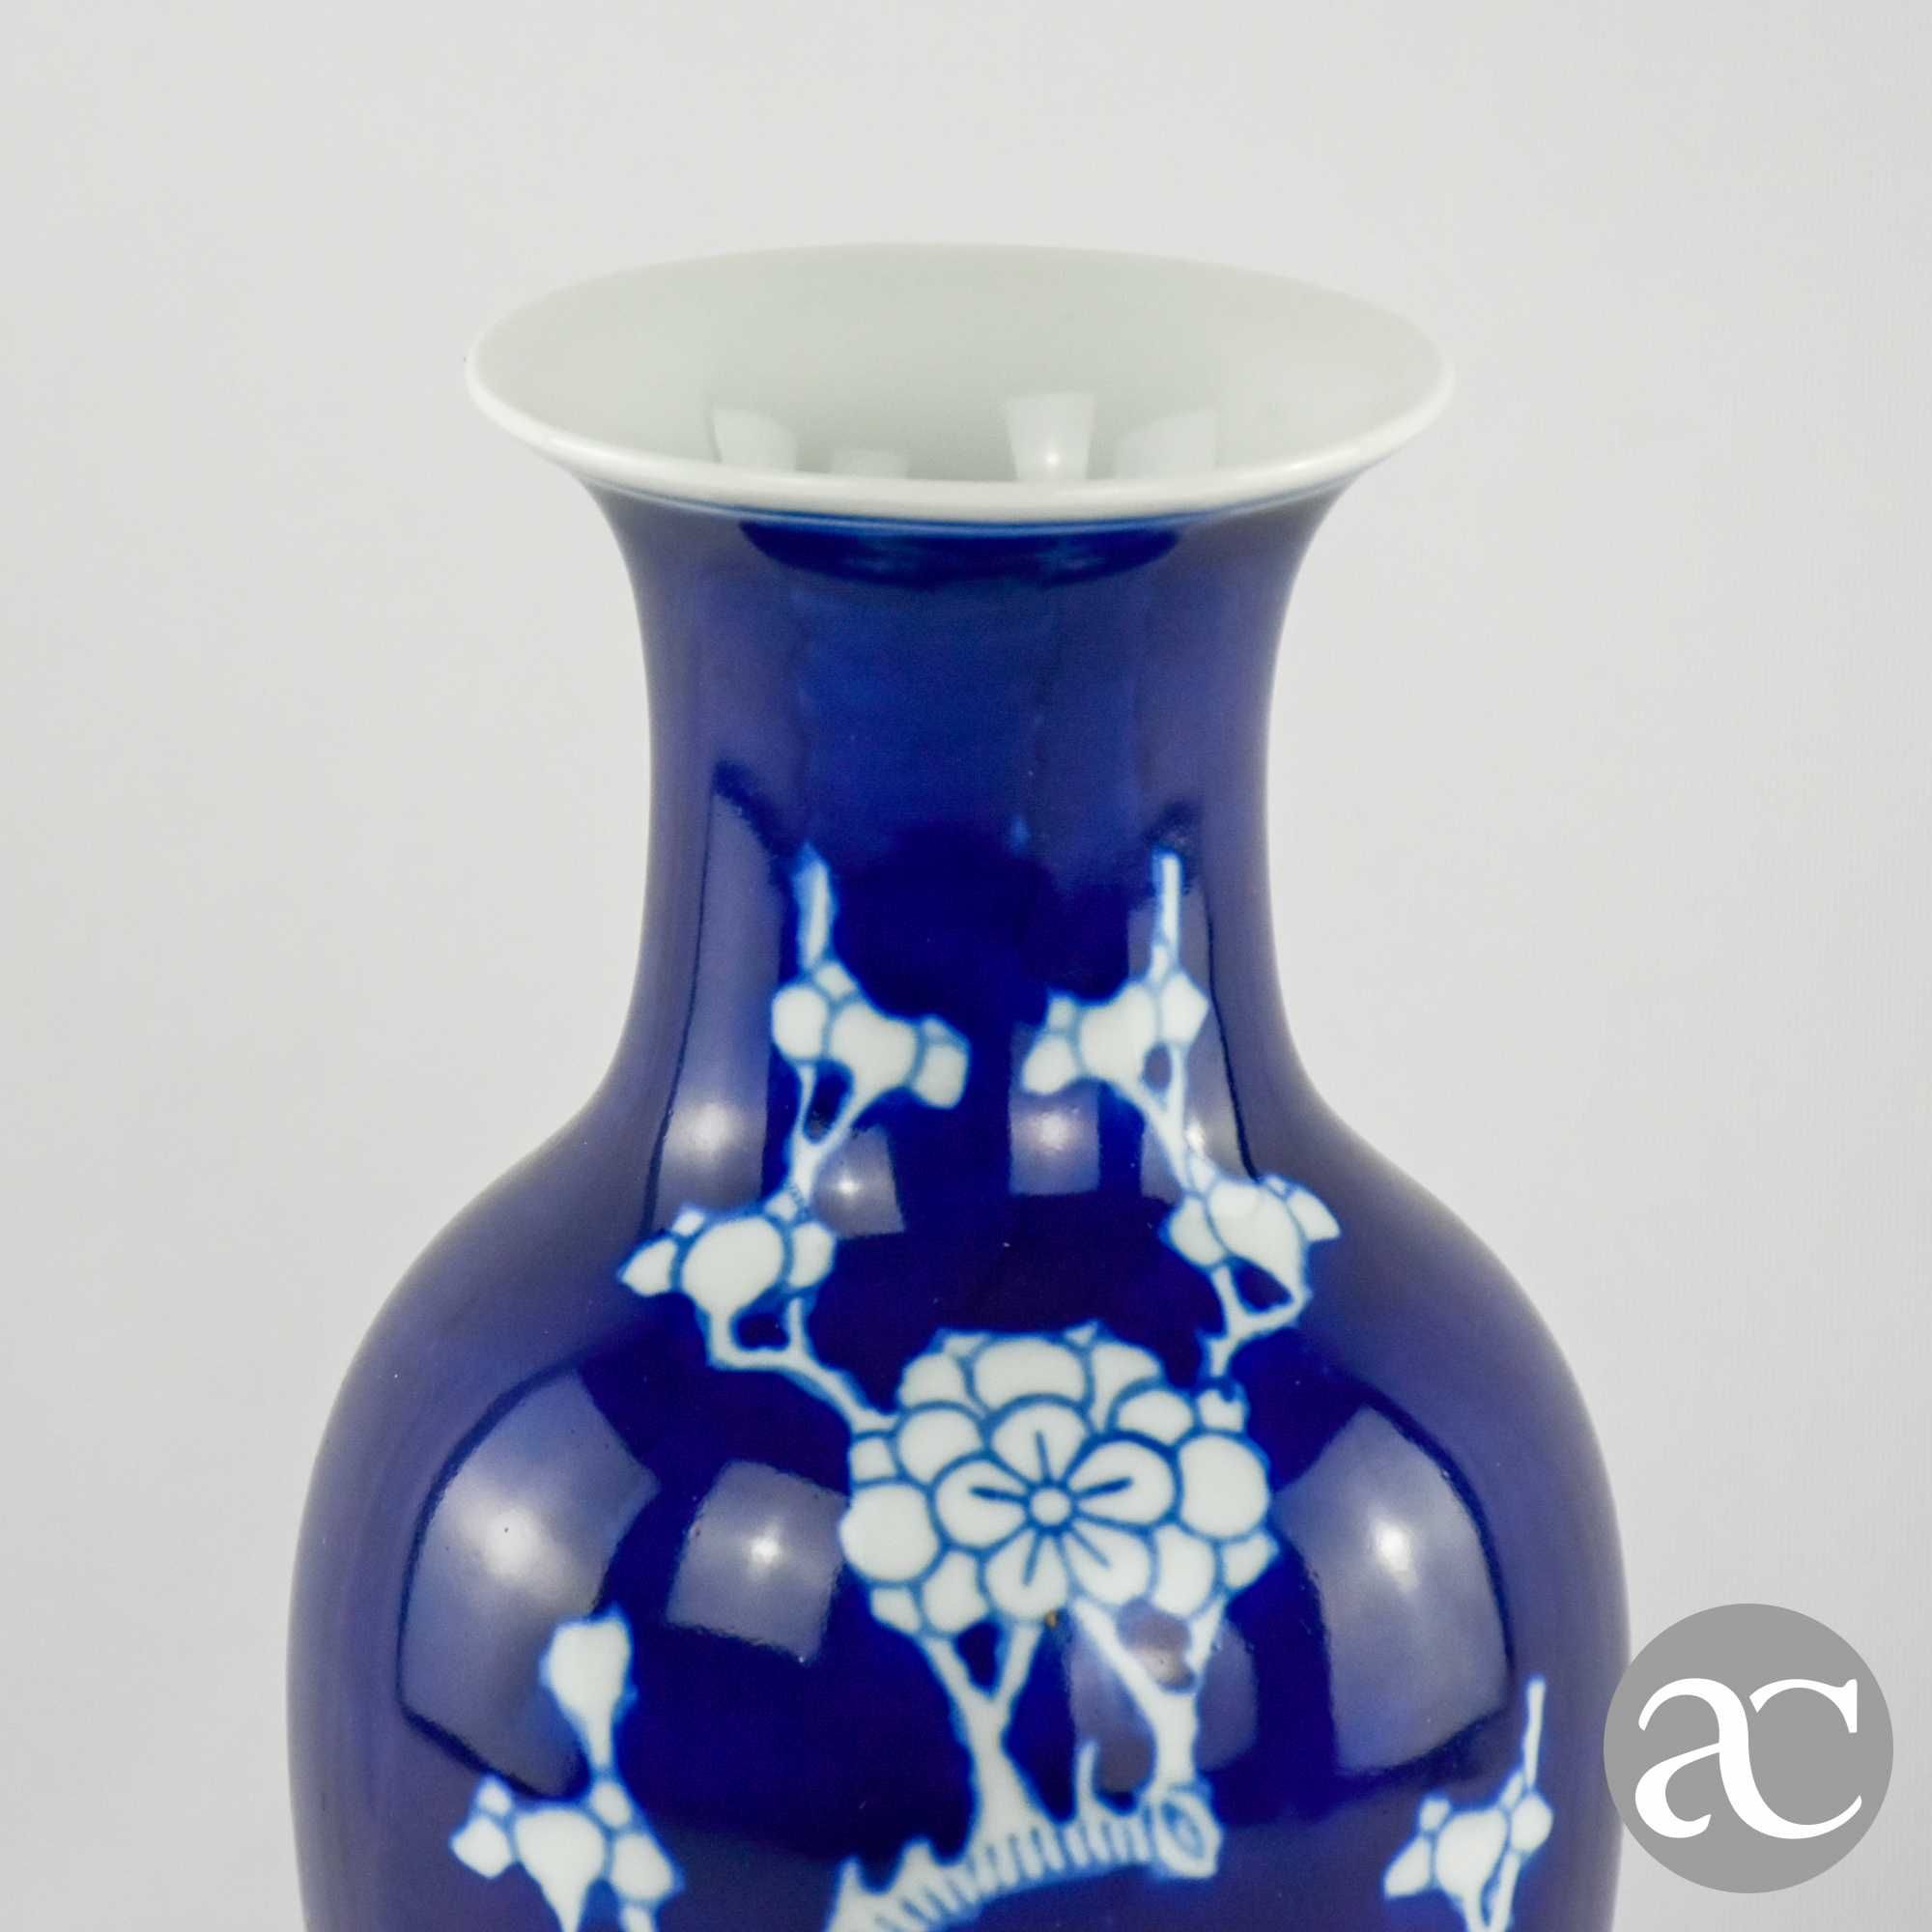 Jarra Porcelana da China, Azul-Cobalto, Decoração Flor de Amendoeira